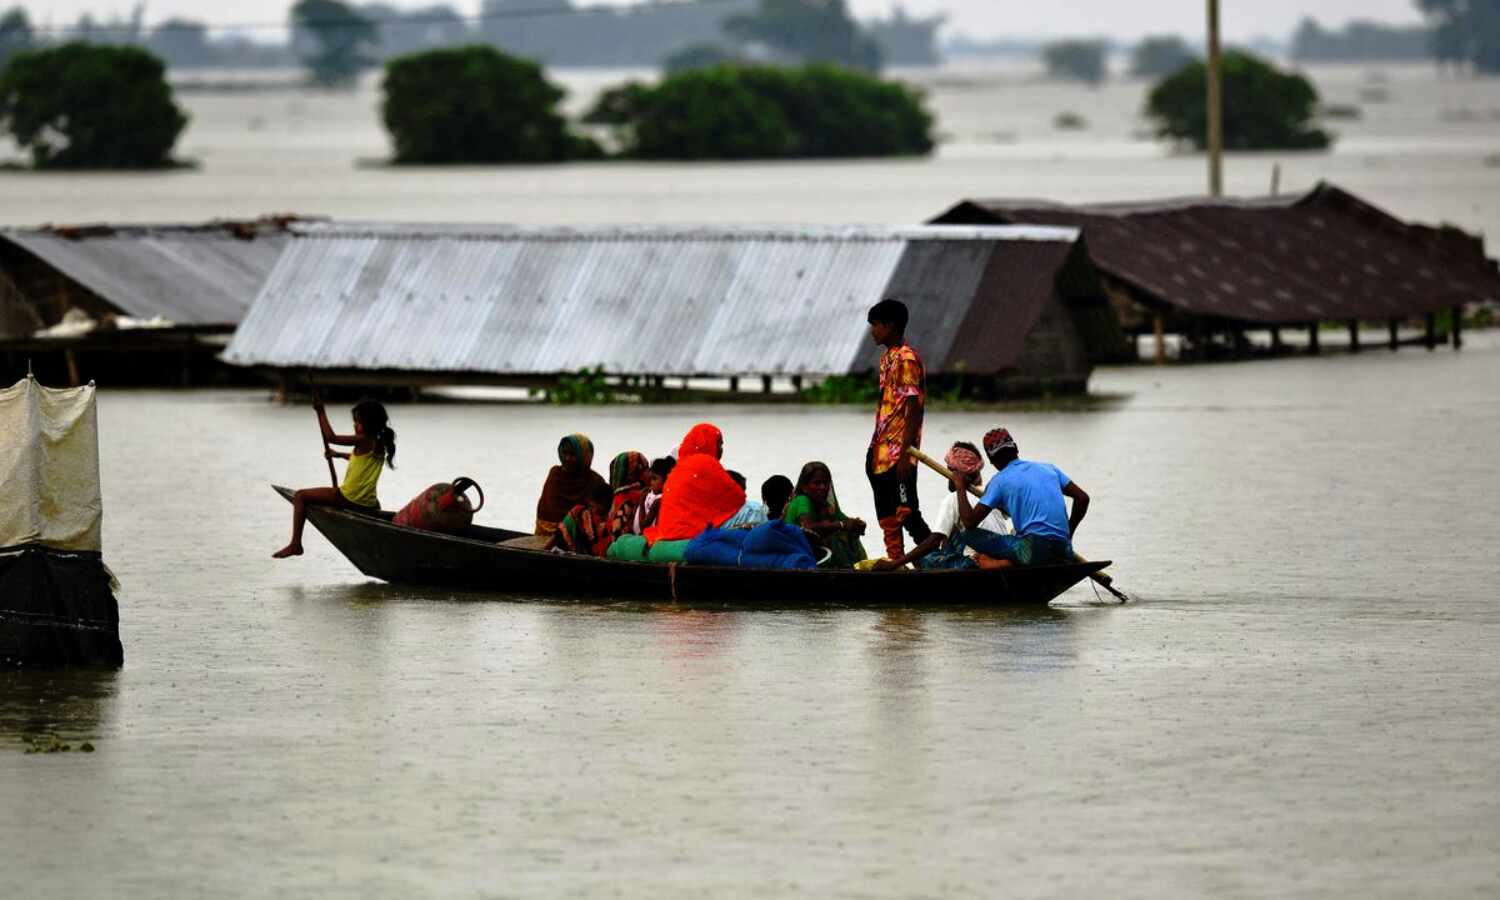 Assam Flood : असम में बाढ़ से 47 लाख लोग प्रभावित, मरने वालों की संख्या बढ़कर 81 हुई